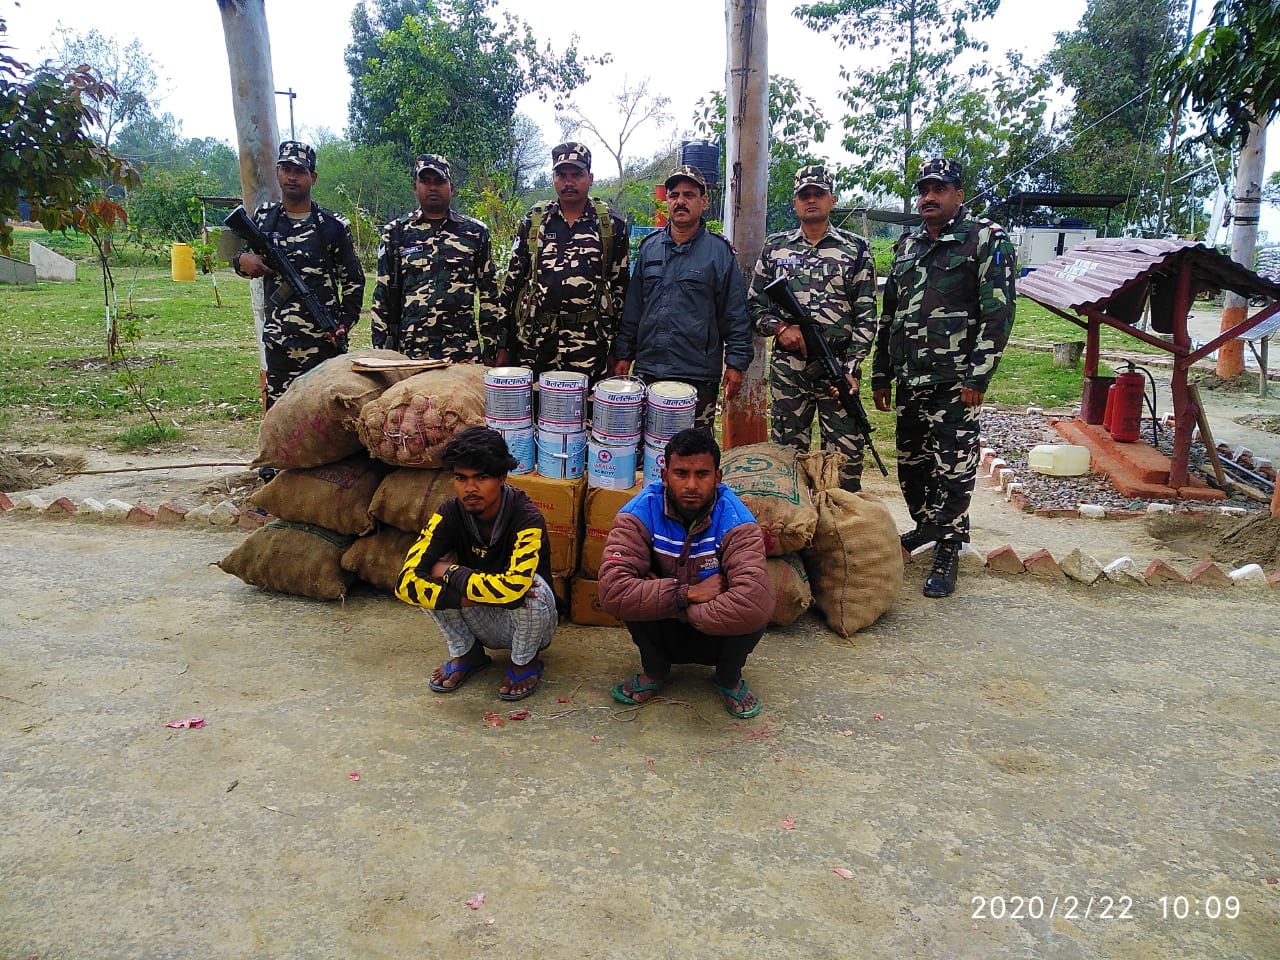 एसएसबी ने भारत-नेपाल सीमा पर हजारों रूपये के माल को सीज कर दो तस्करों को लिया हिरासत में | New India Times